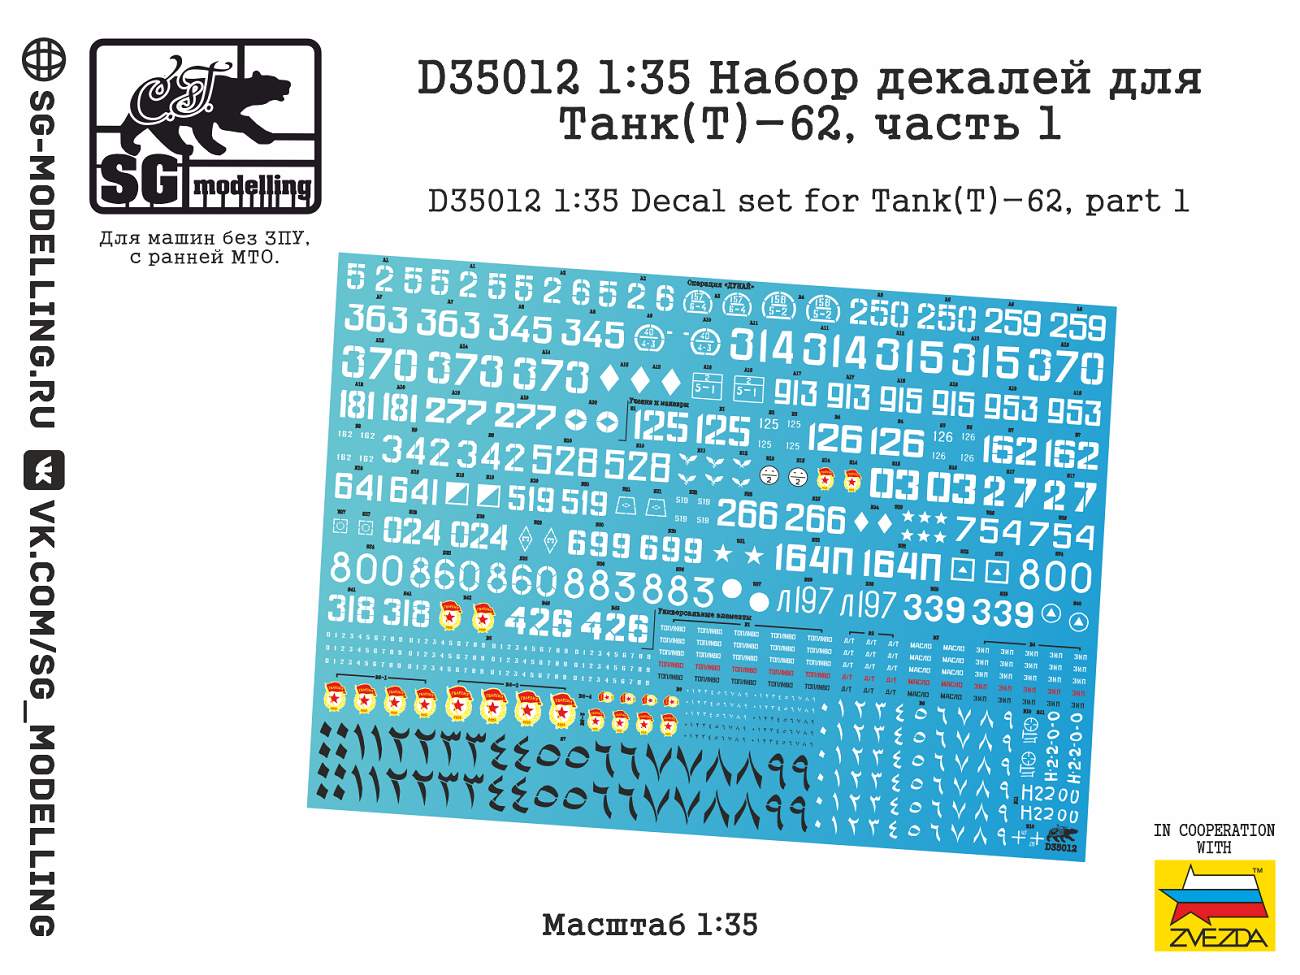 D35012  декали  Набор декалей для Танк-62, часть 1  (1:35)